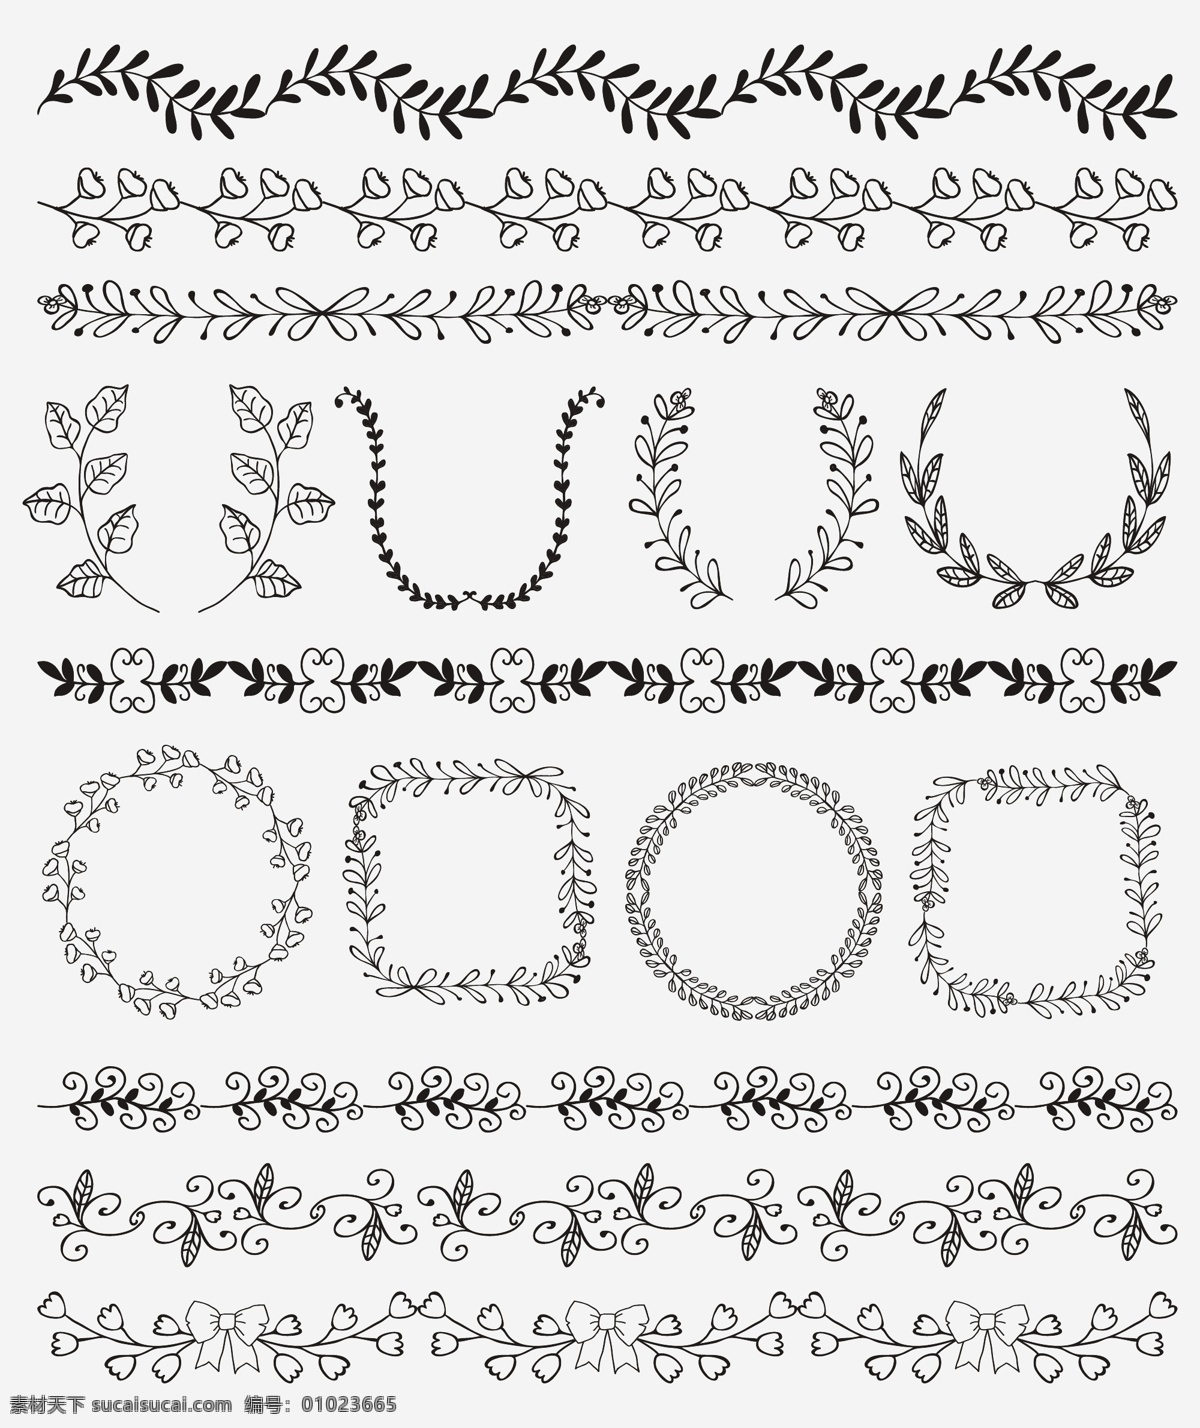 黑白 分割线 橄榄枝 花朵 线条 花环 矢量 唯美 精致 手绘 装饰 矢量素材 平面设计素材